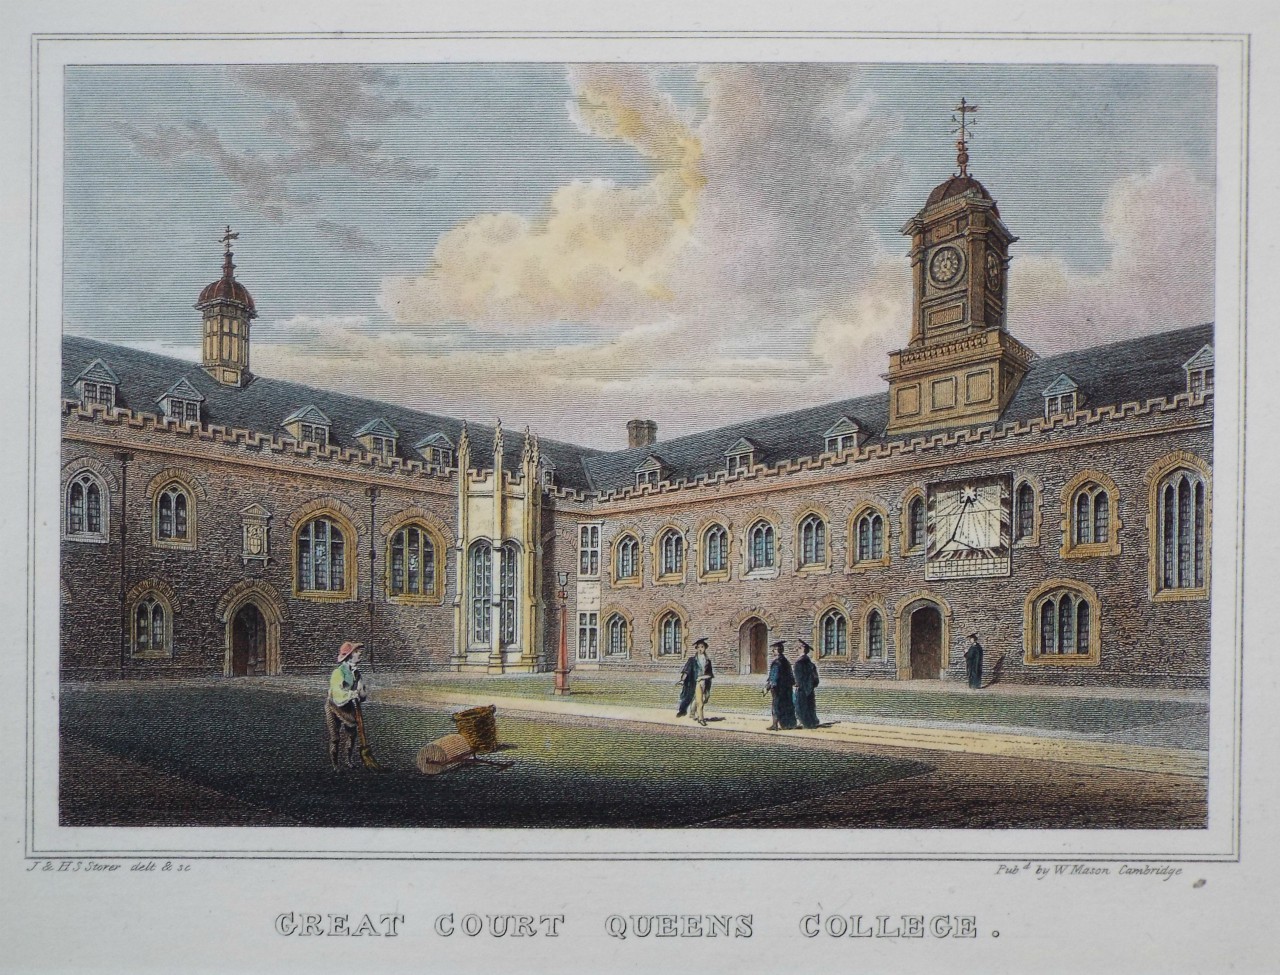 Print - Great Court Queens College. - Storer